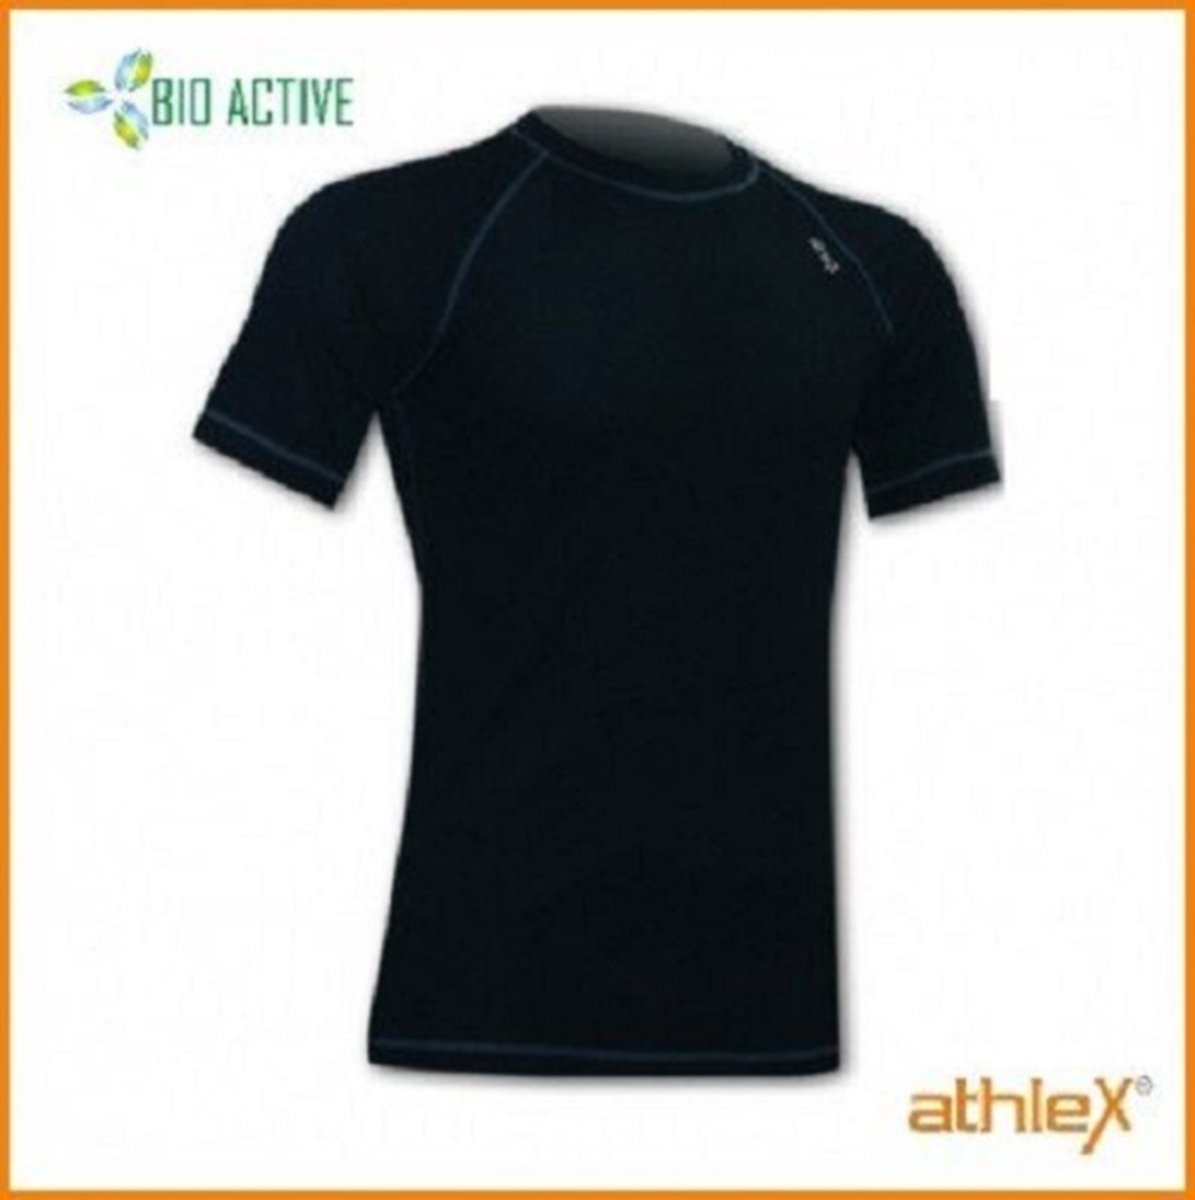 Athlex Bio Active Shirt korte mouw XXL Zwart